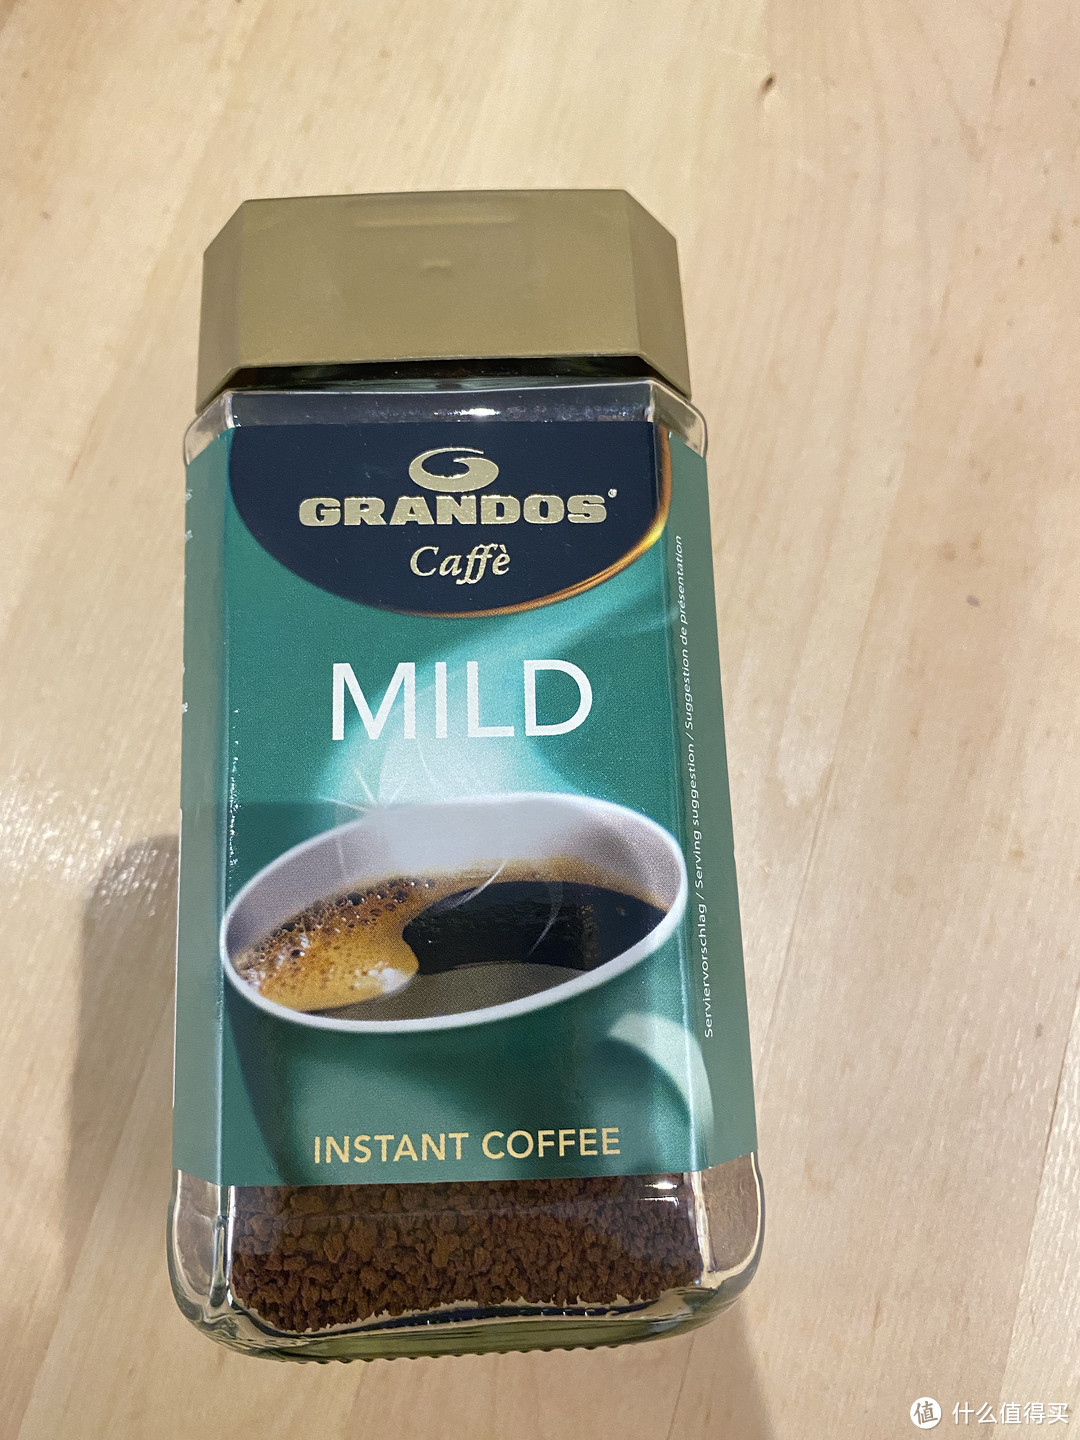 6.9的格兰特醇雅柔和黑咖啡，就价格来说真的很惊艳